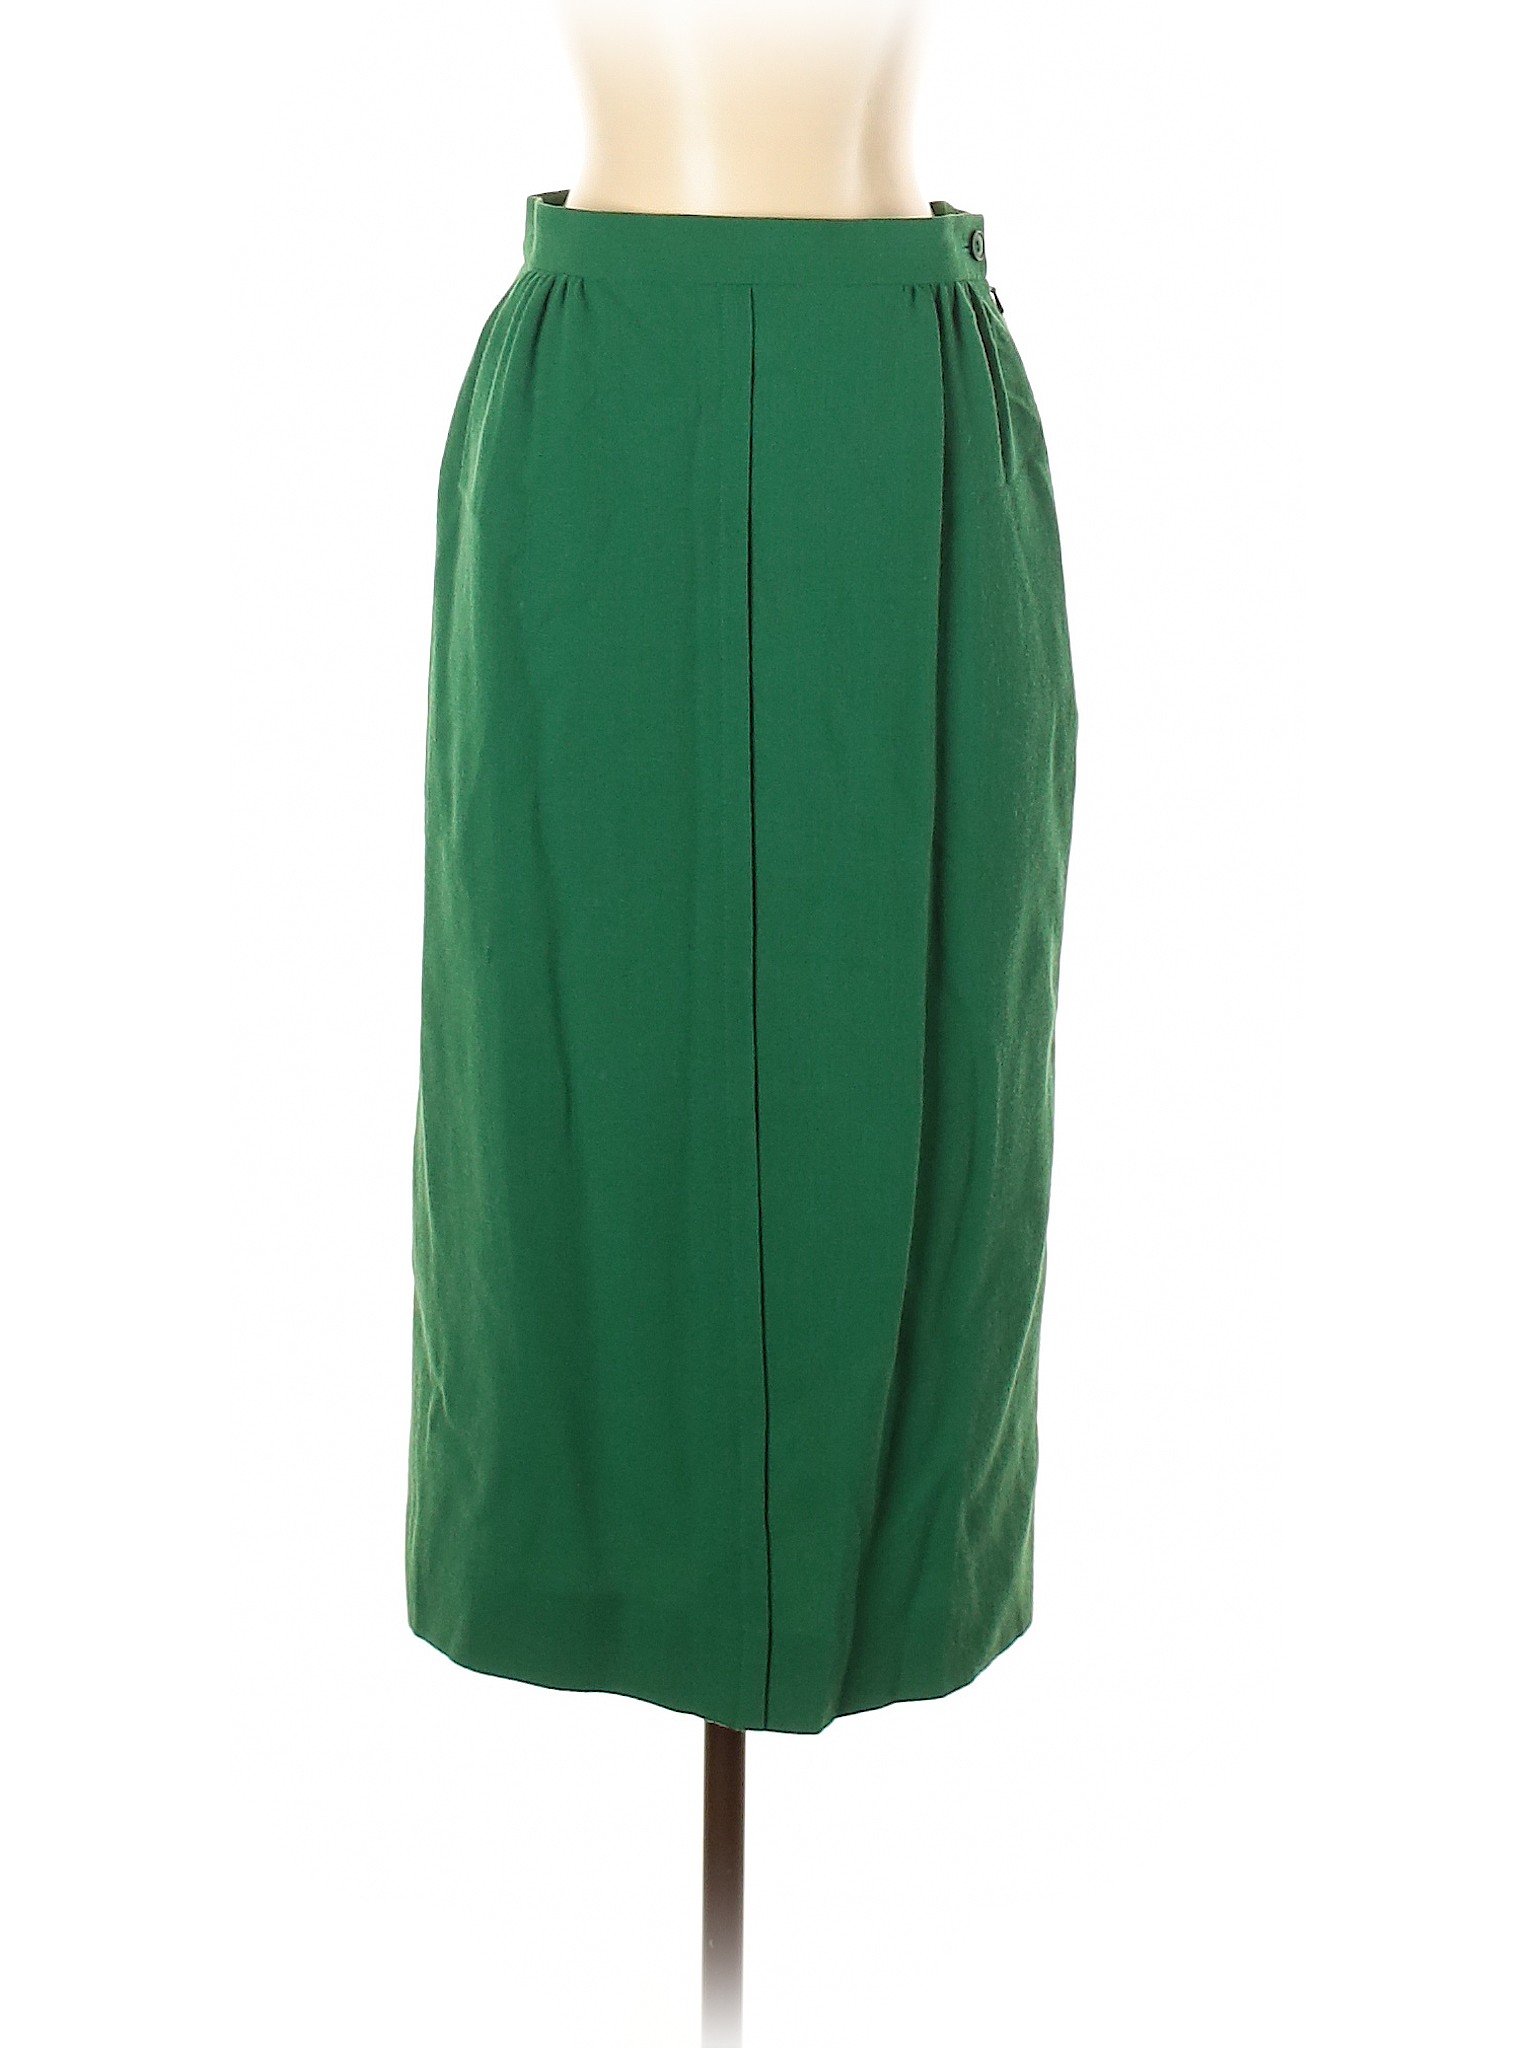 Jaeger Women Green Wool Skirt 10 | eBay